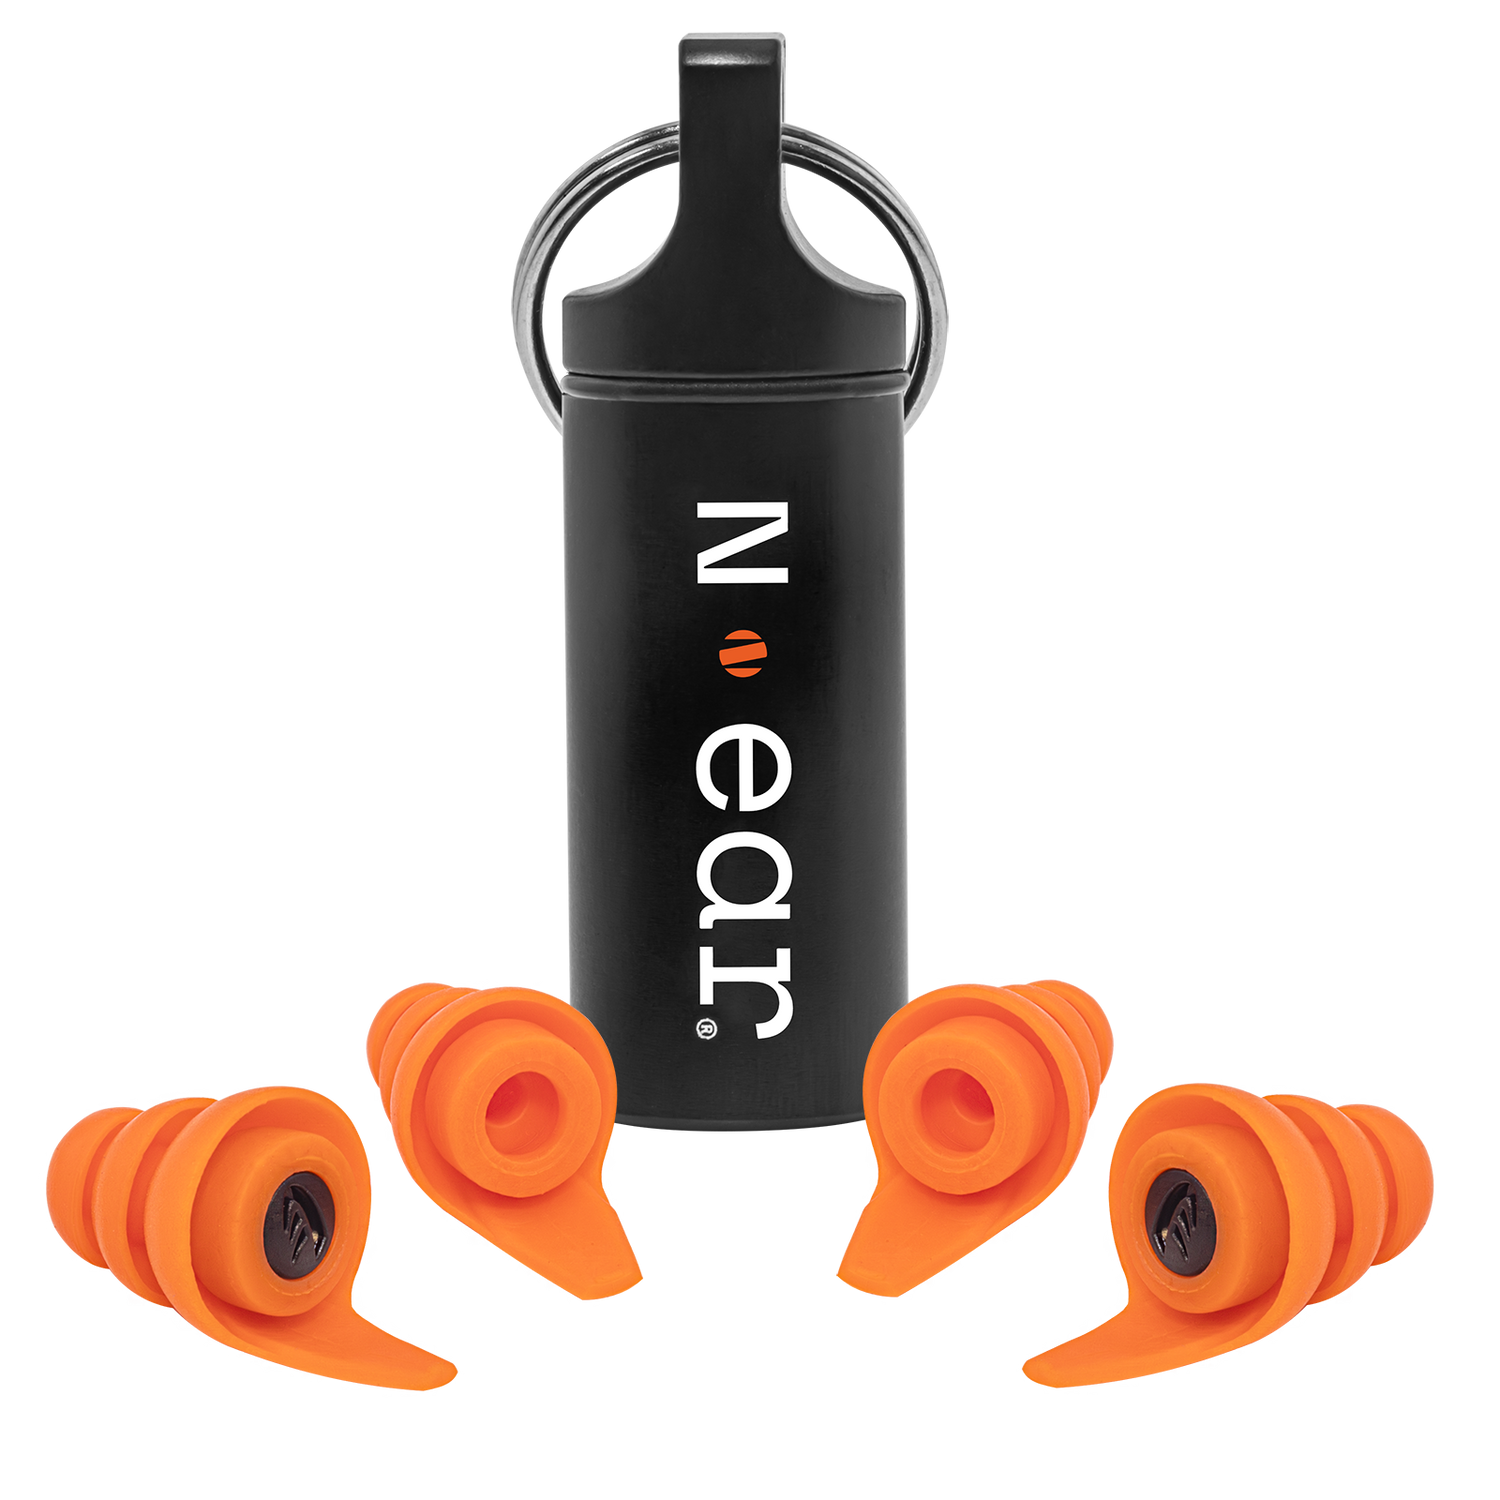 N-ear: Protectr™ Earplugs - Heavy Industry (Metal Detectable)